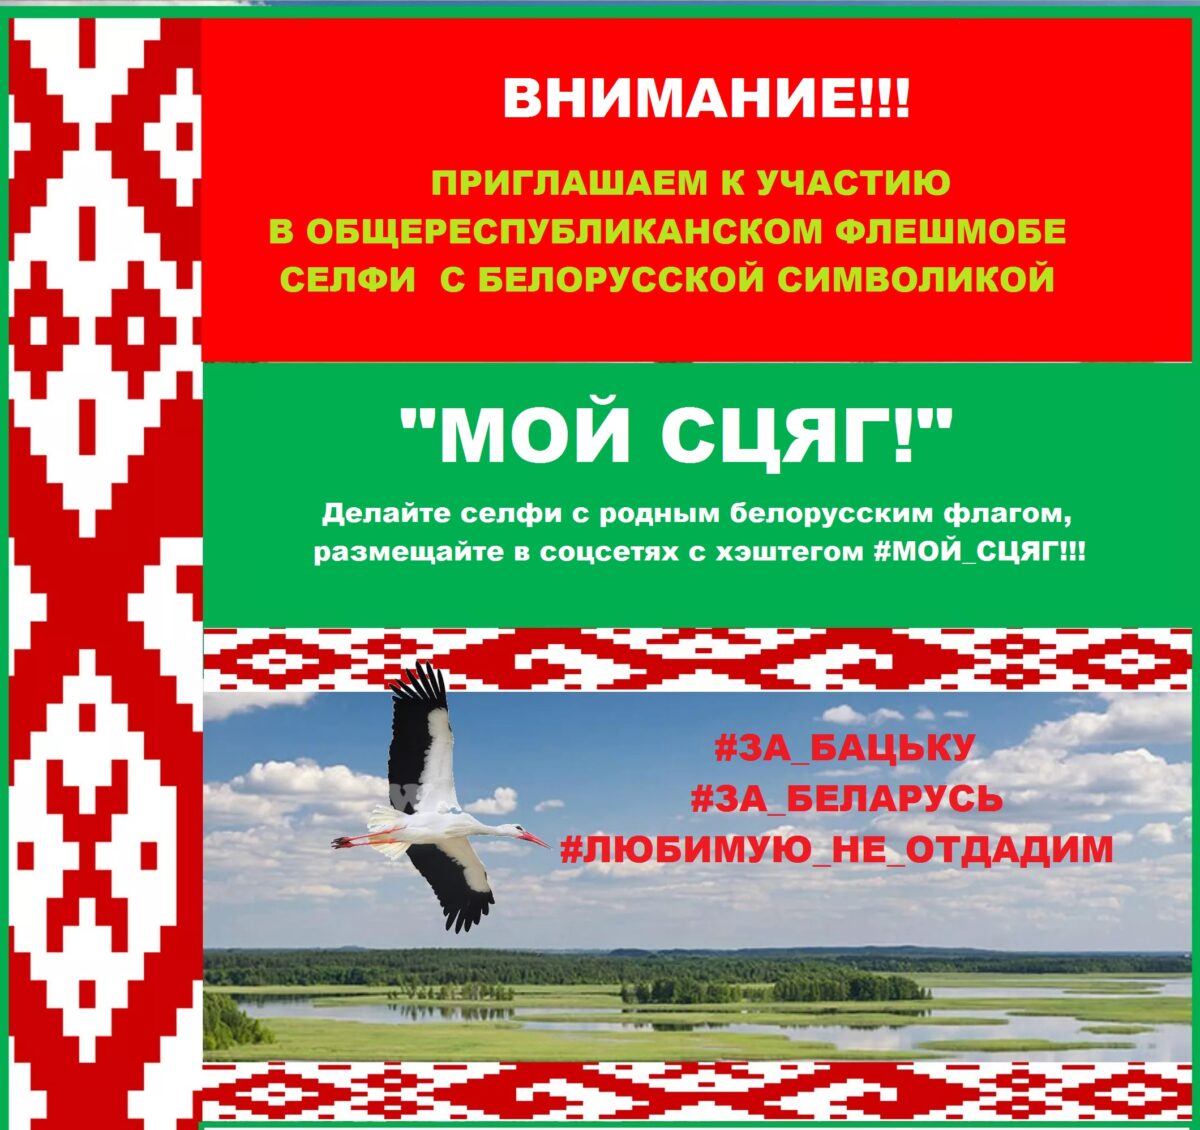 Бобруйчан приглашают принять участие в флешмобе селфи «Мой сцяг!»